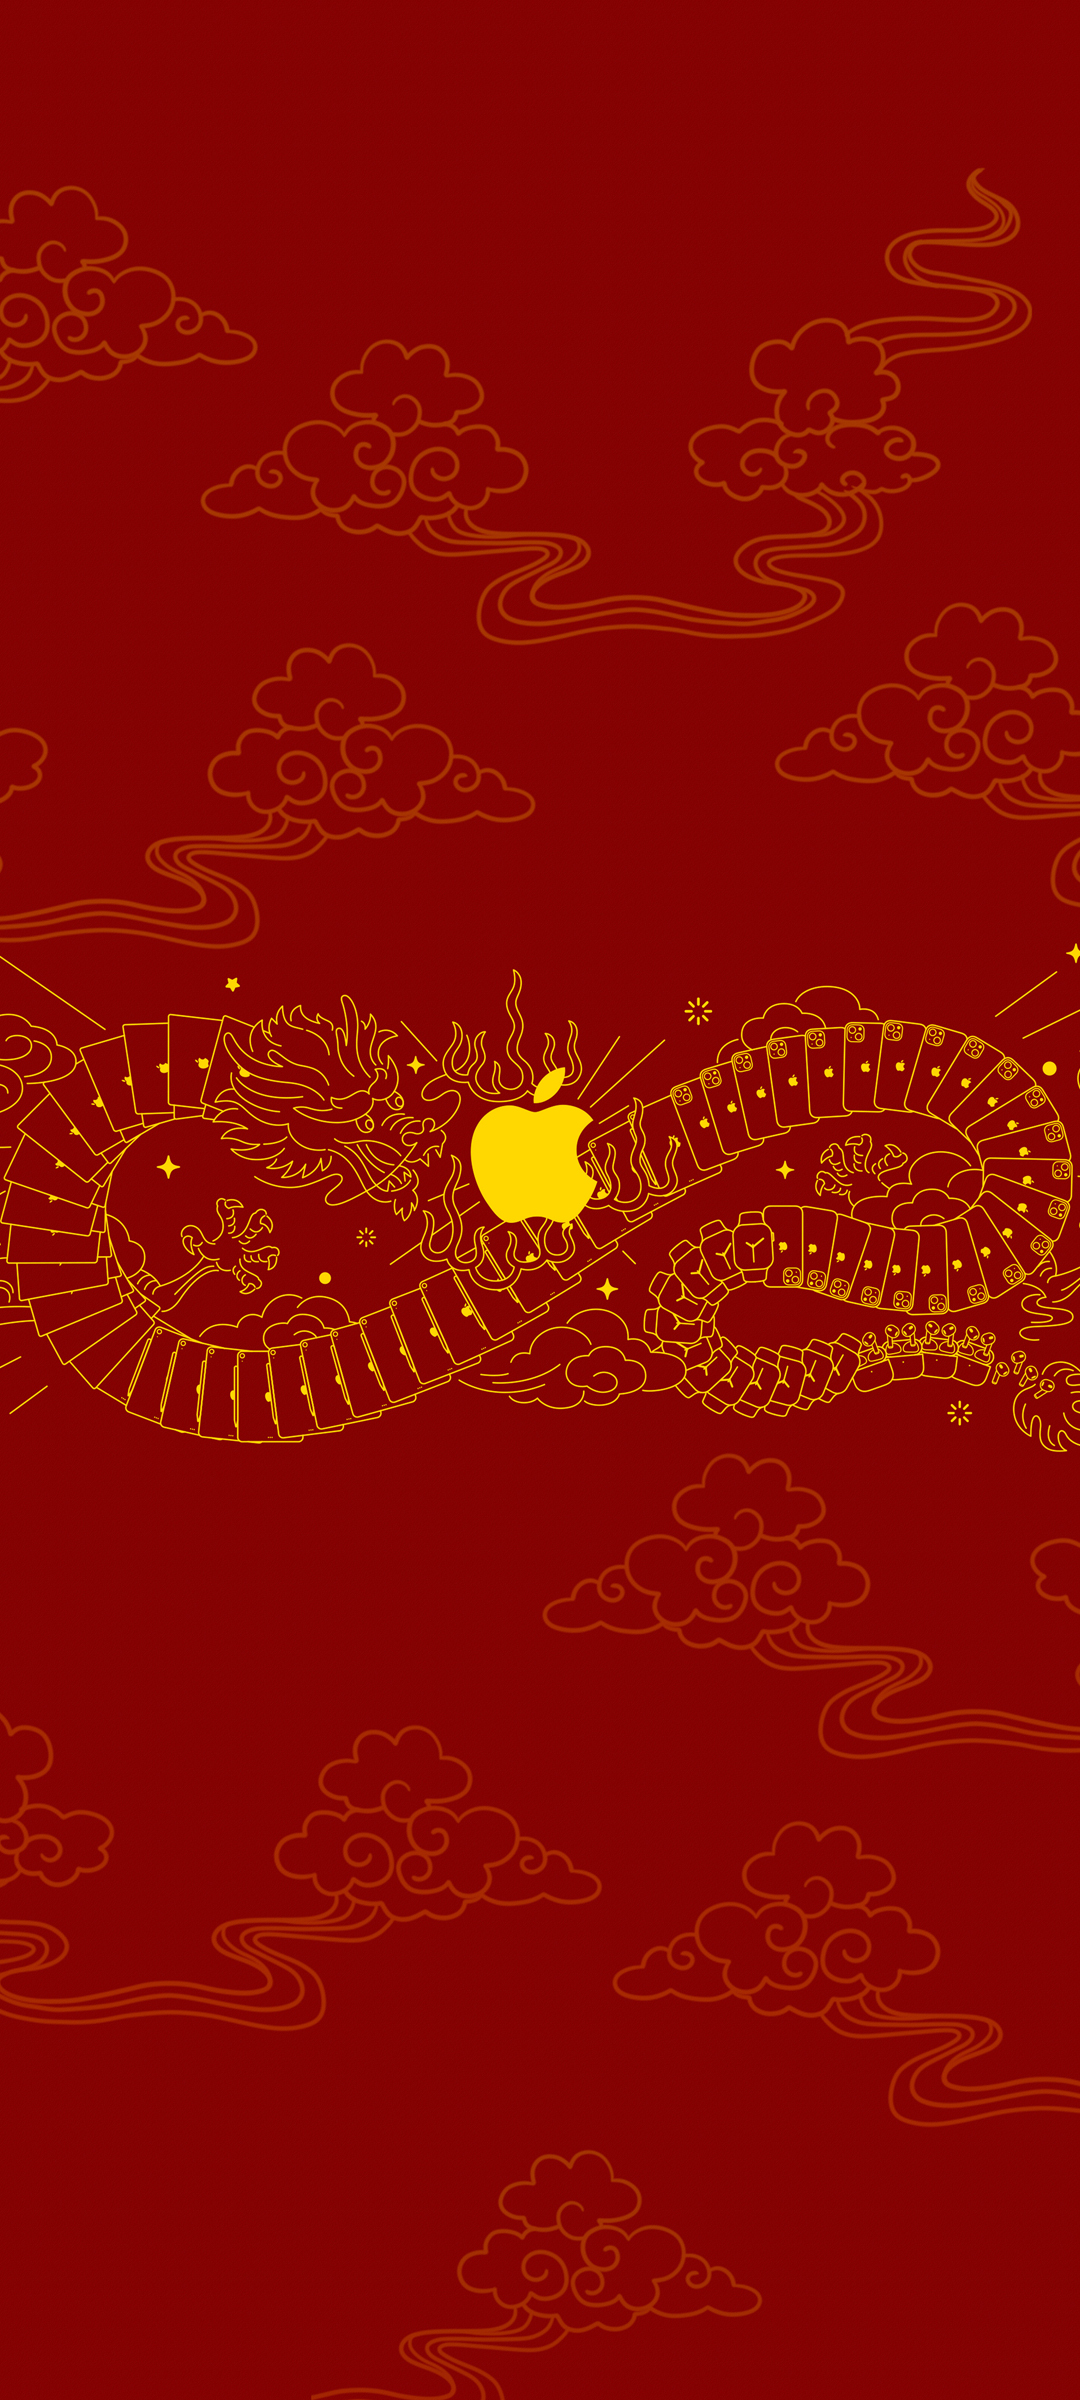 苹果 龙年 红色背景 高清手机壁纸图片